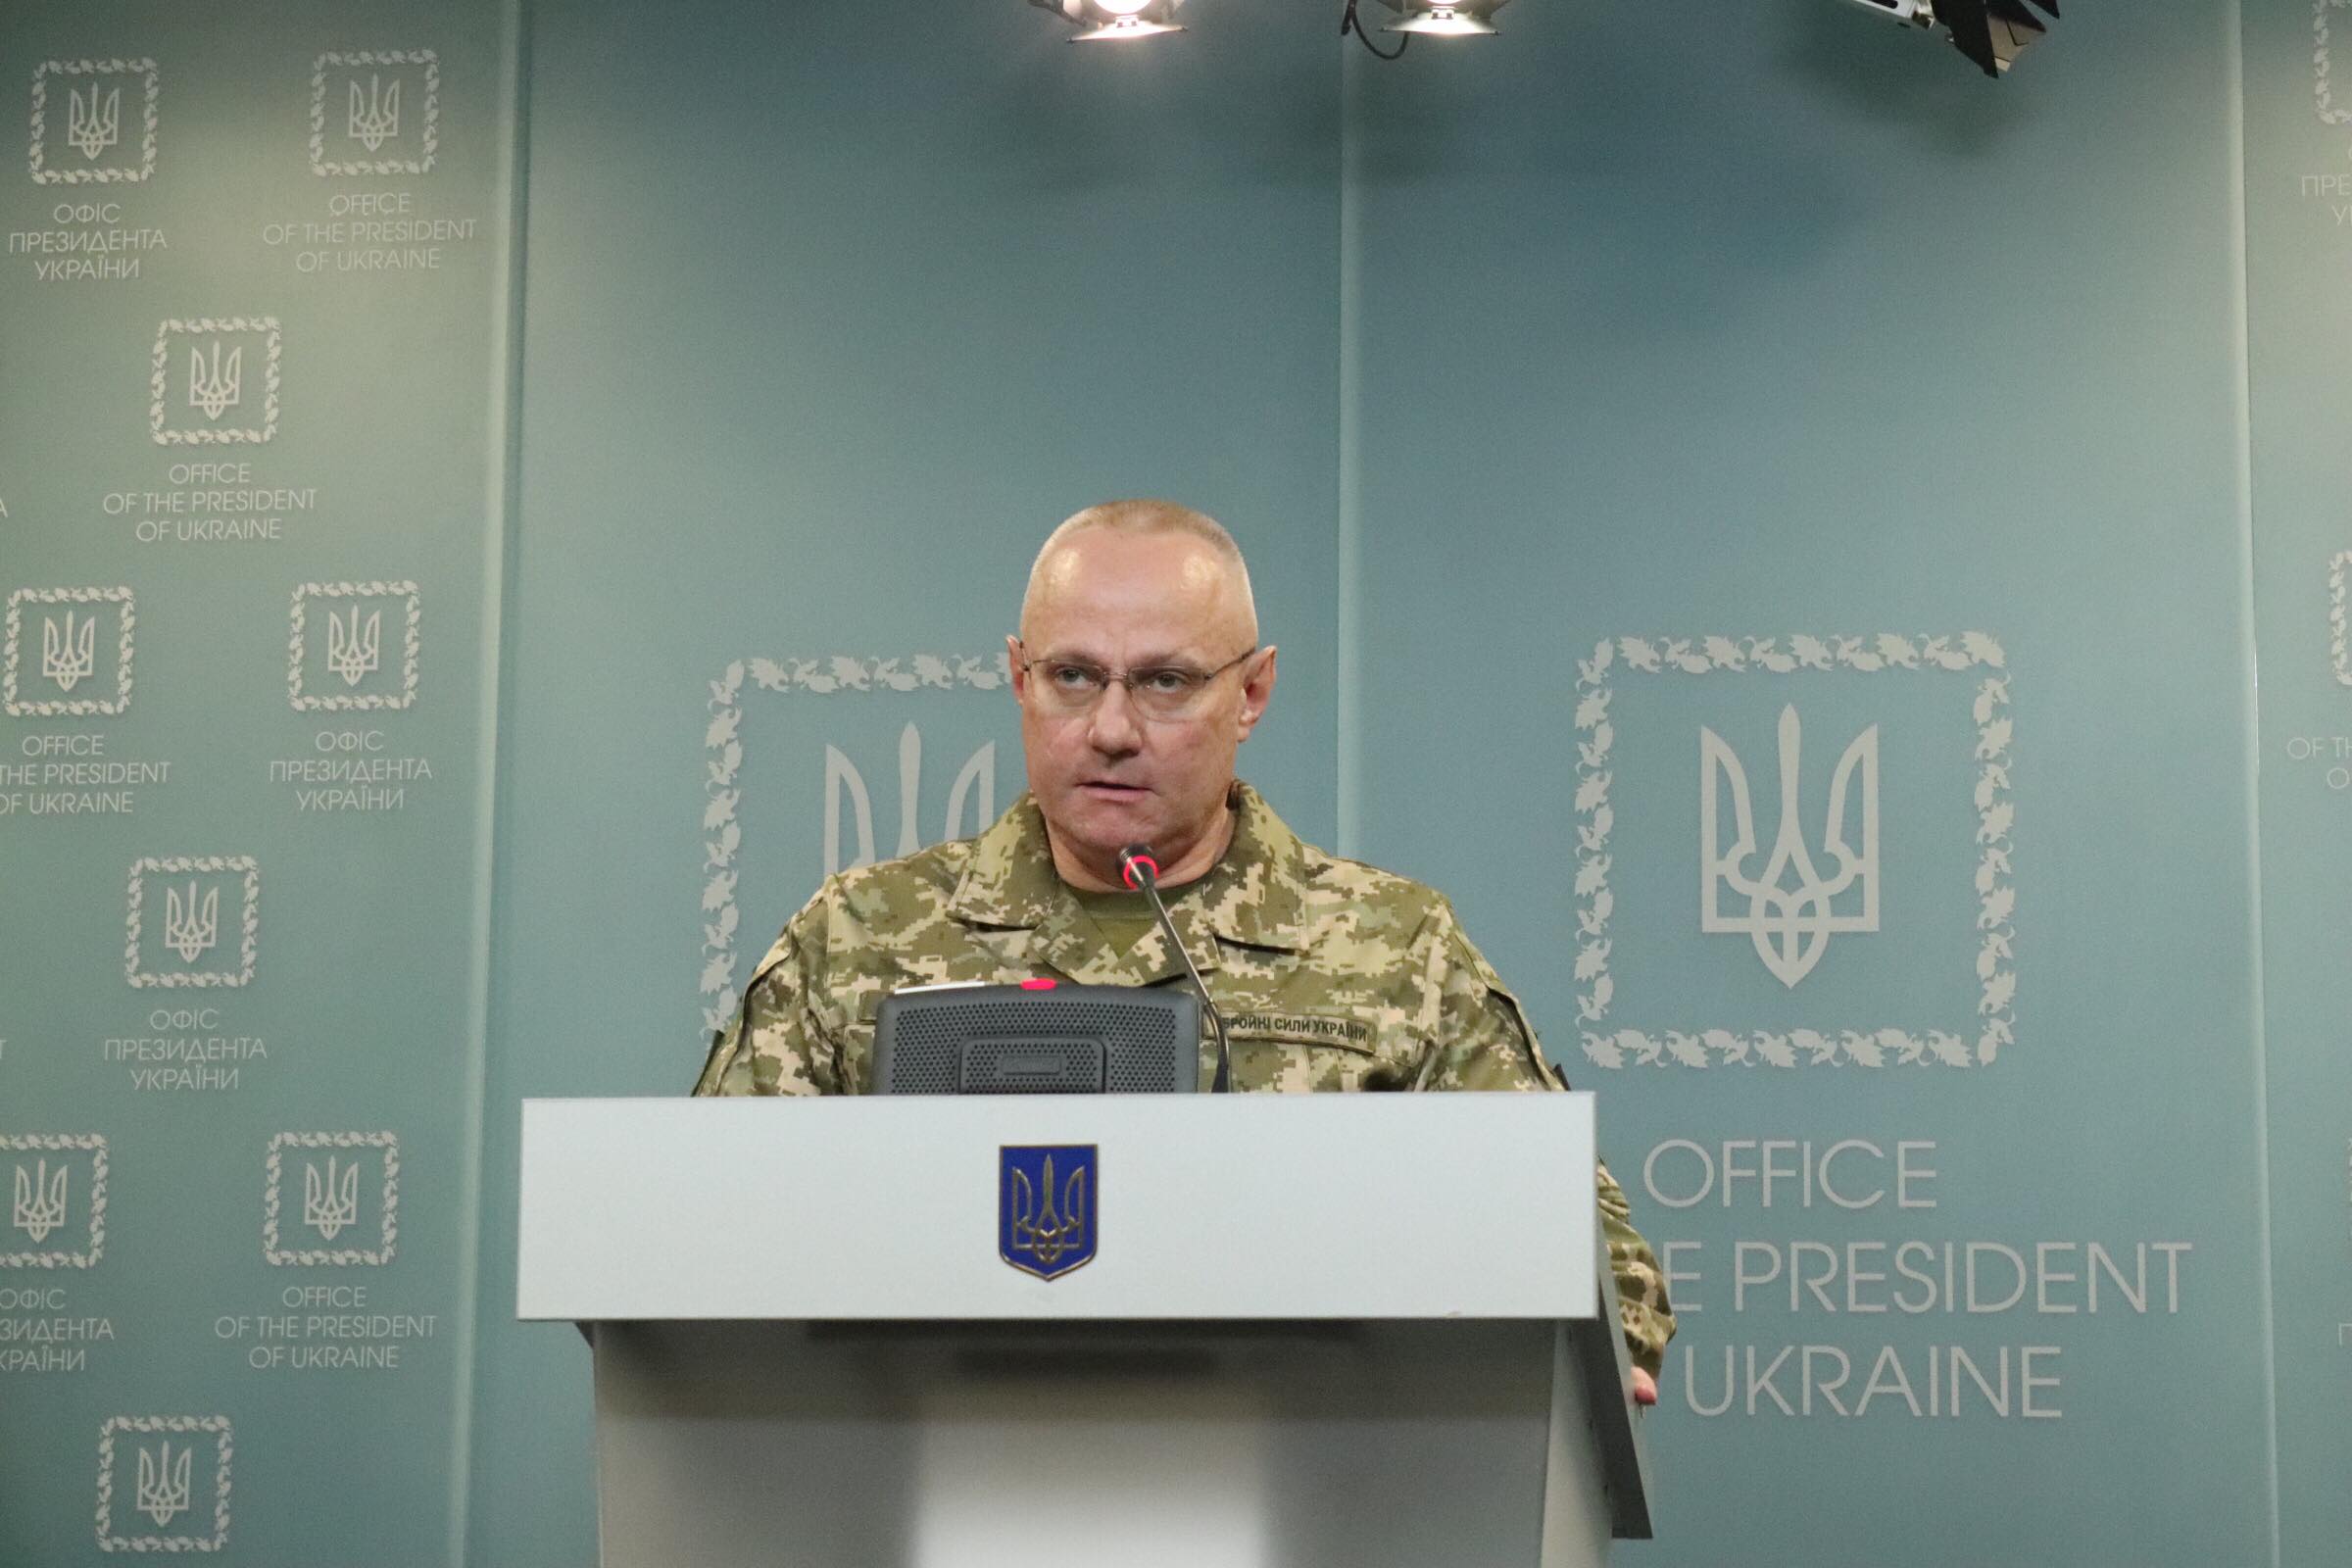 В результате атаки боевиков один украинский военнослужащий погиб, 3 ранены, 2 контужены — Хомчак